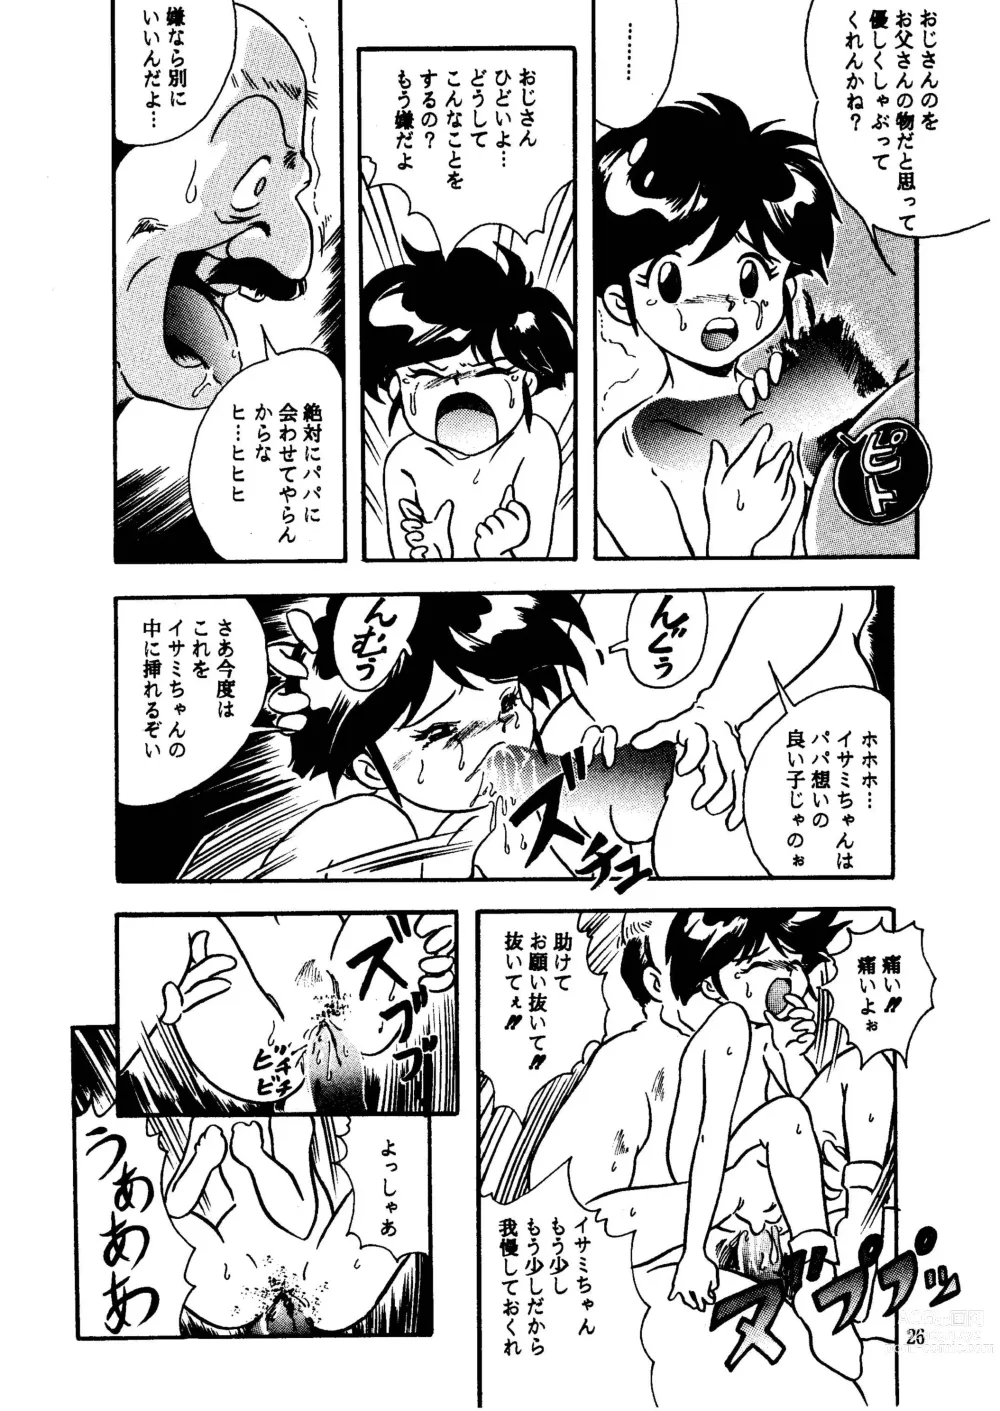 Page 26 of doujinshi GALTECH